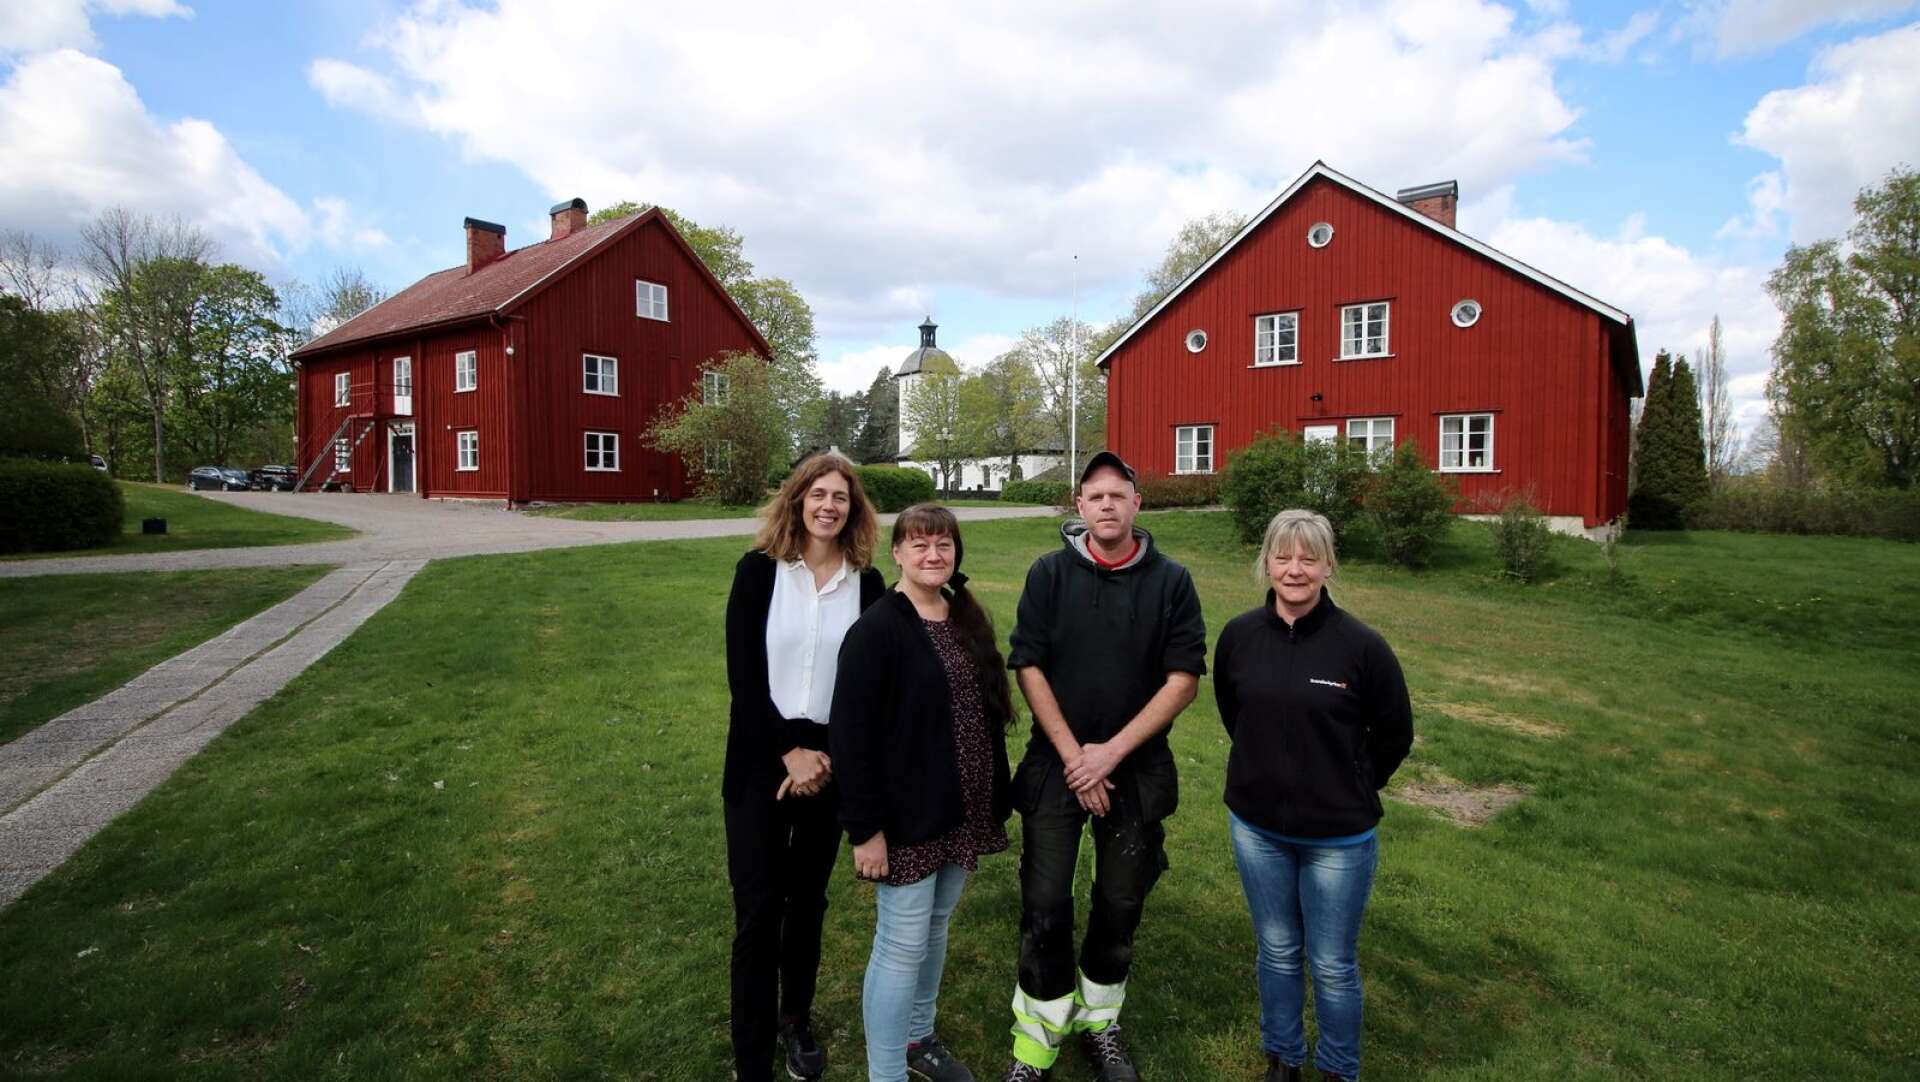 Idén till öppet hus med miljötema vid Steneby kyrka kommer från personalgruppen. Här representerade av Nina Sandgren, Helena Olsson, Fredrik Sundström och Linda Johansson.